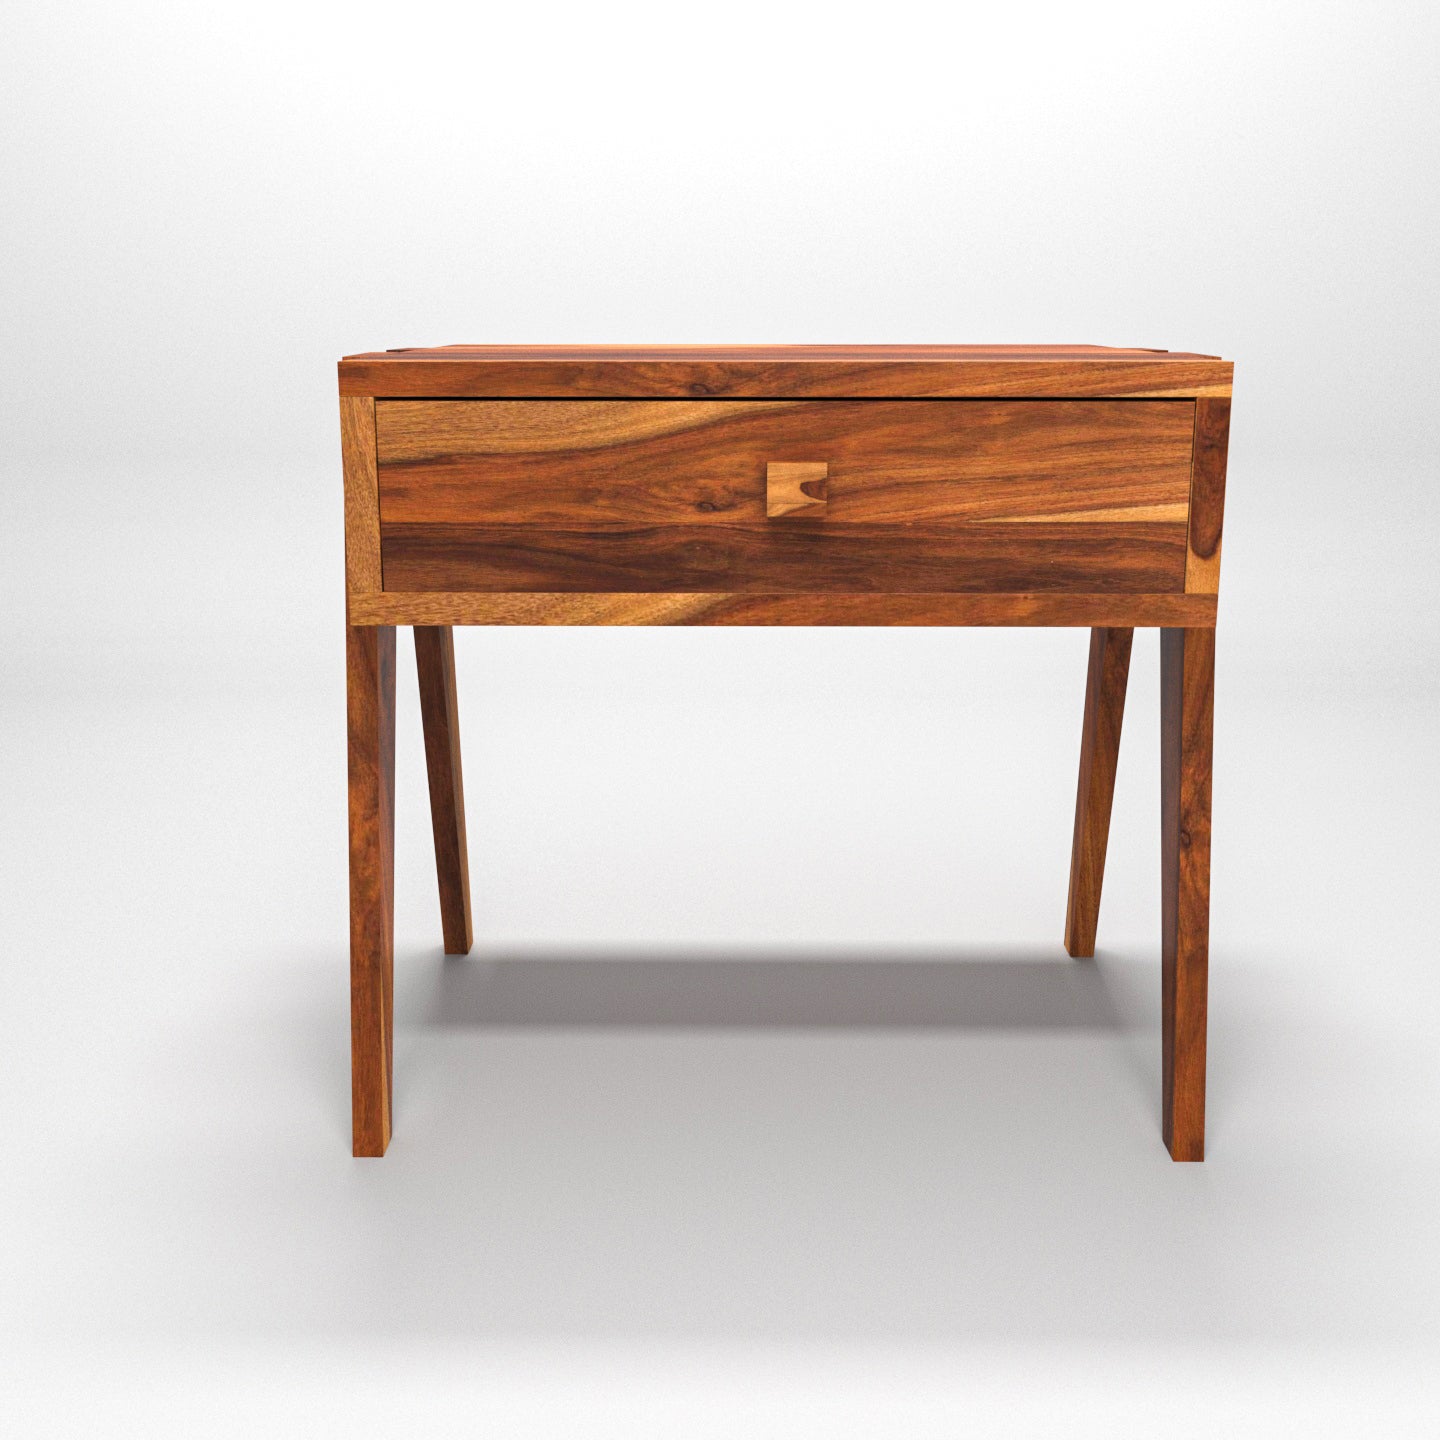 Stylish single drawer sheesham wood bedside Bedside